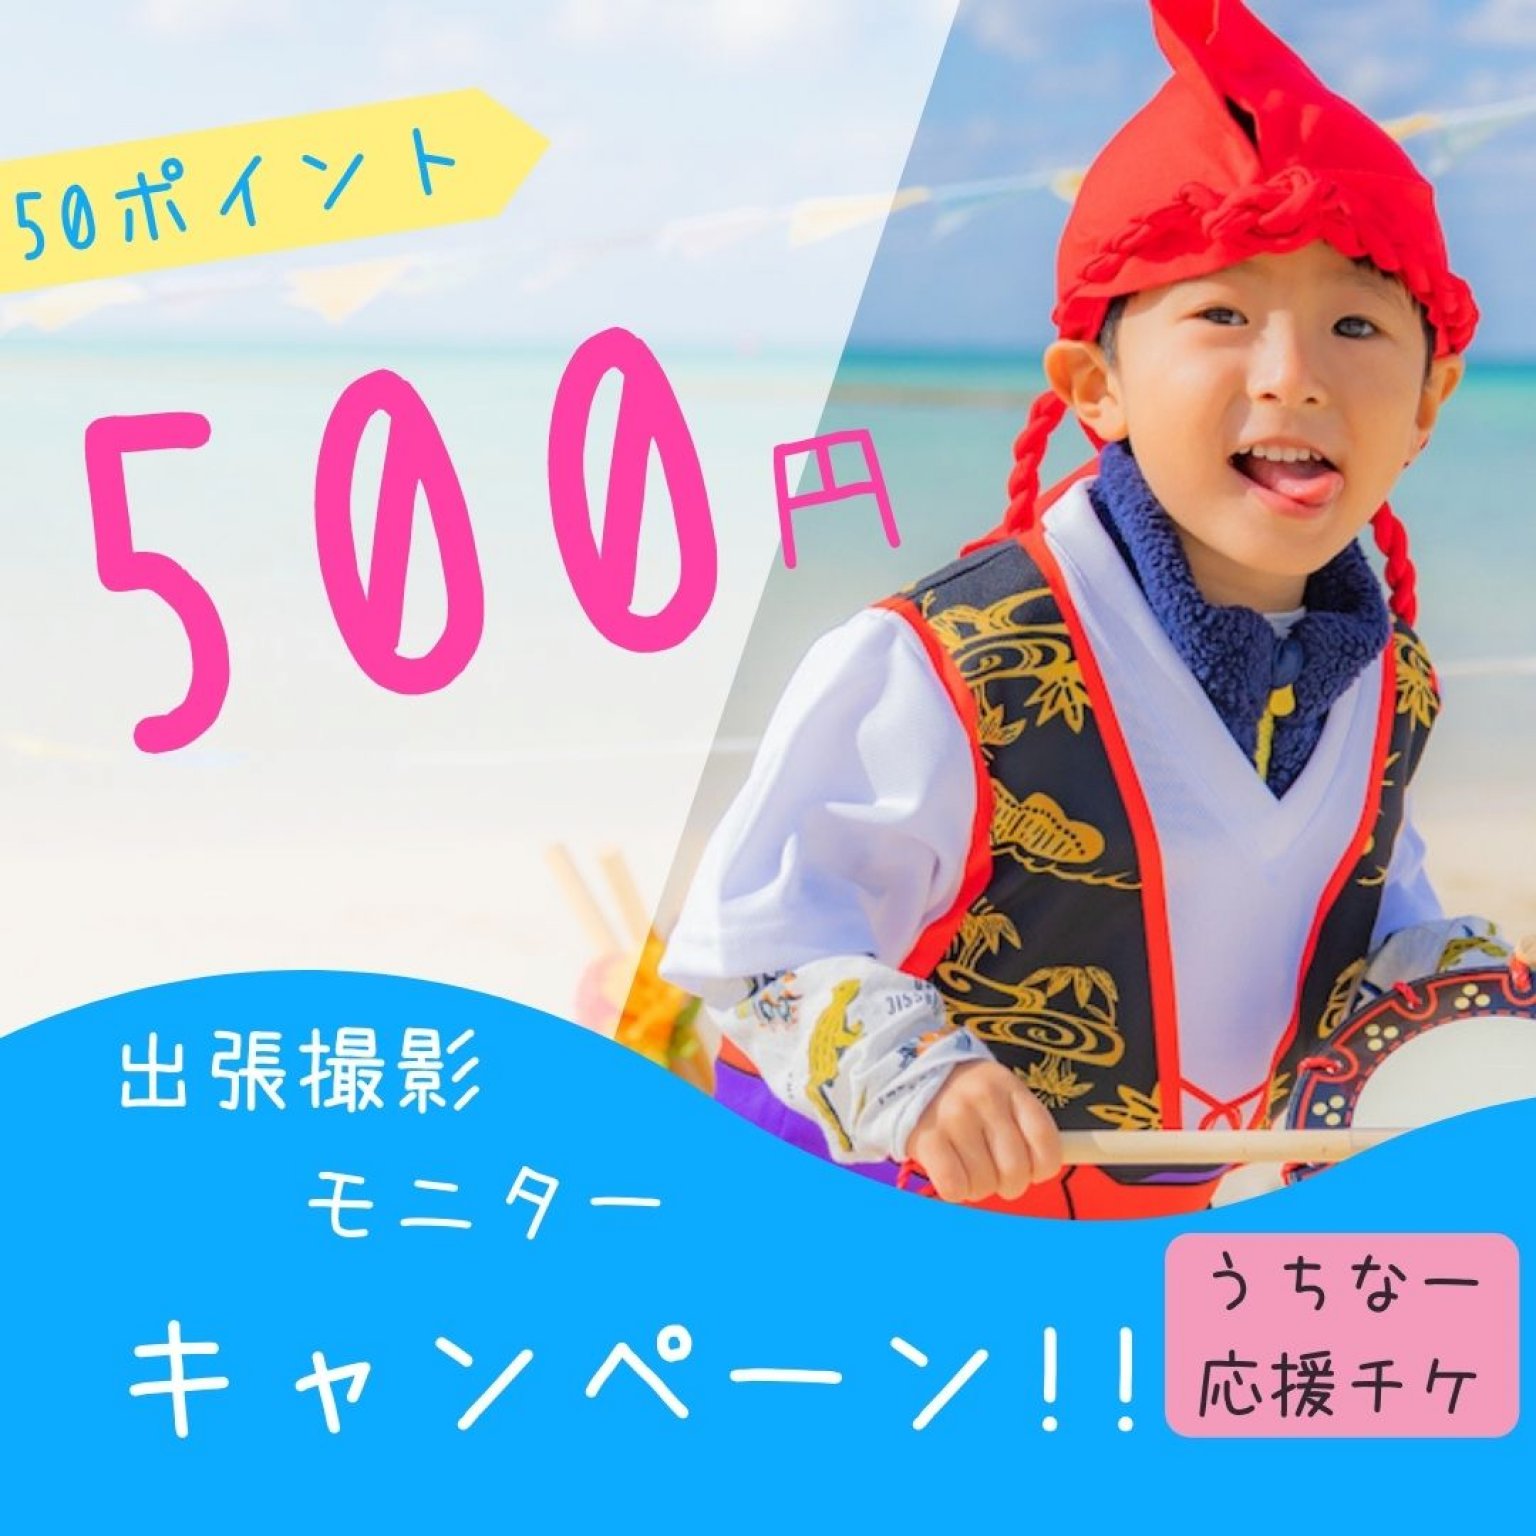 うちなー応援チケット!!!出張撮影モニター500円キャンペーン!!!